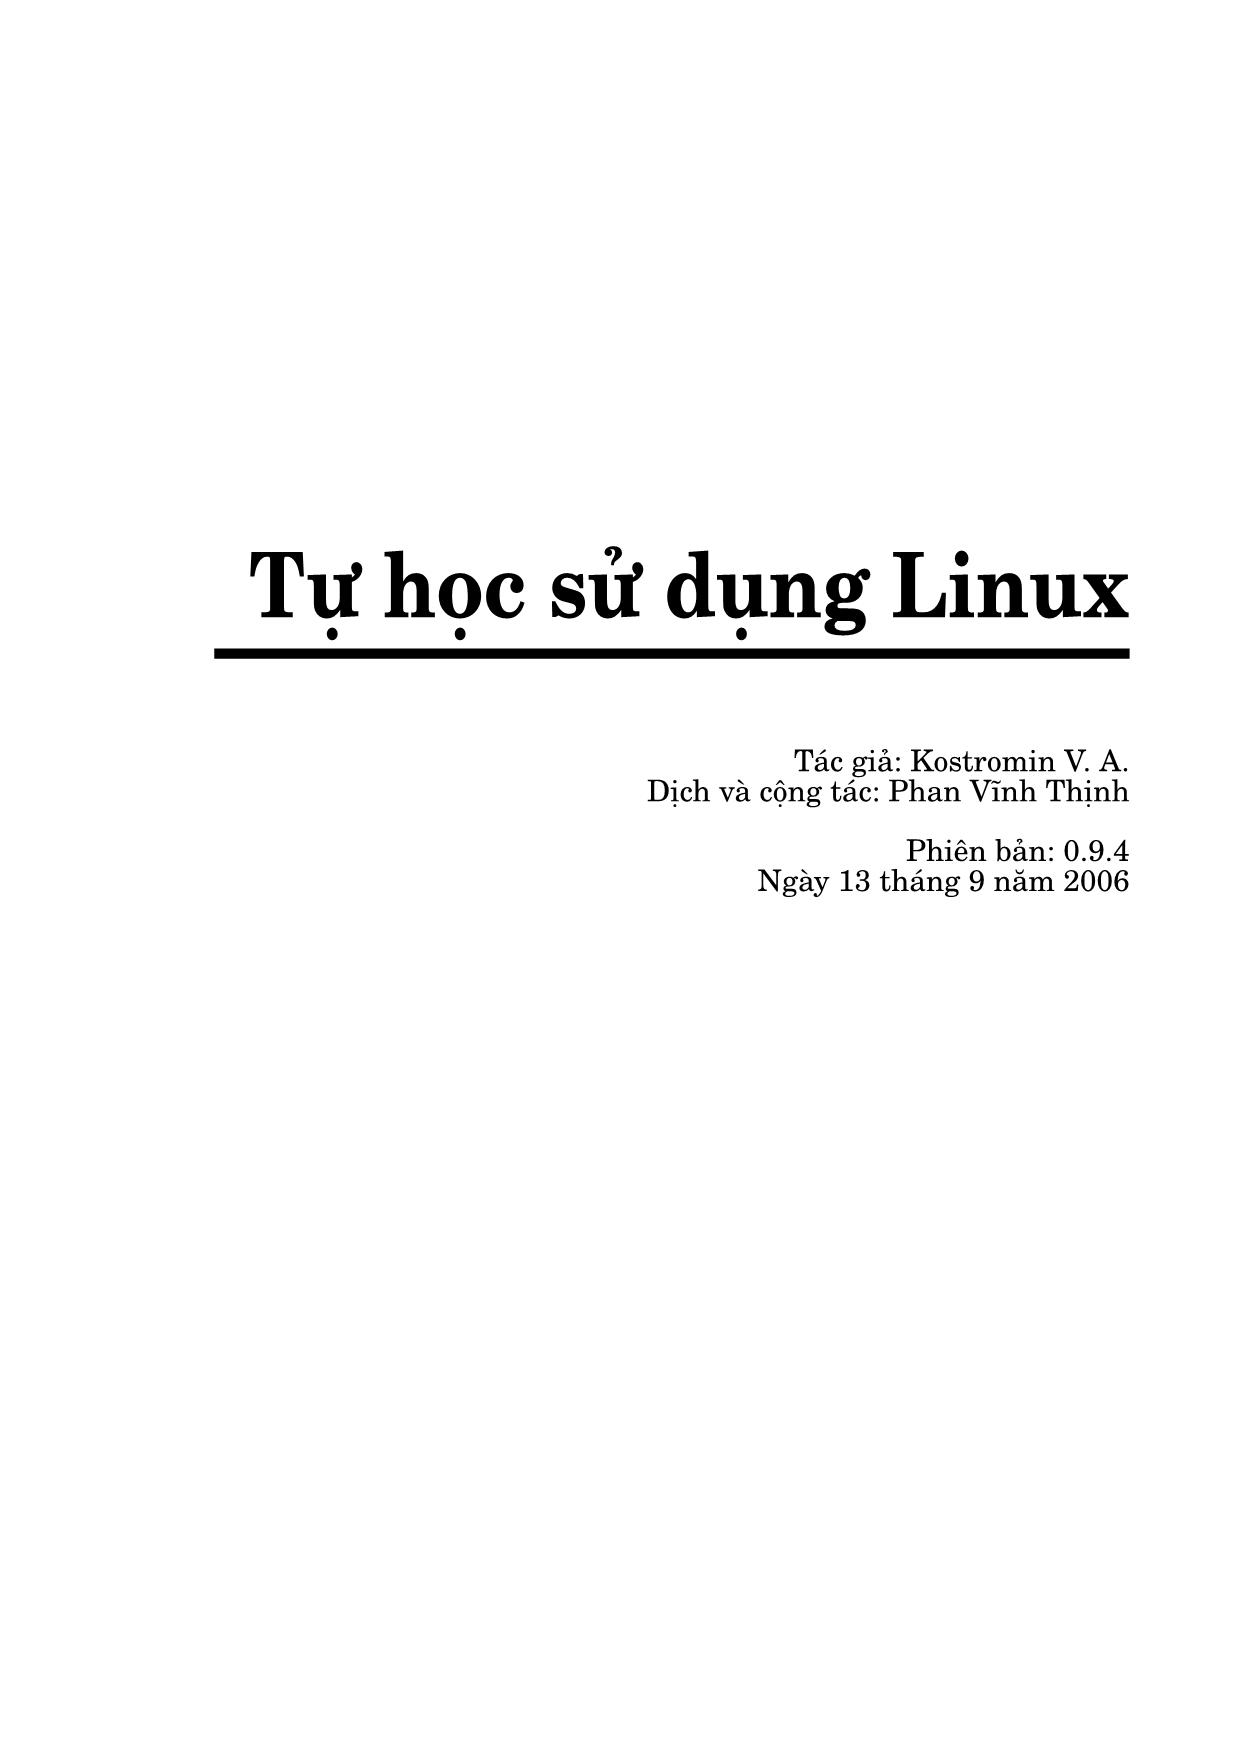 Tự học sử dụng Linux trang 2